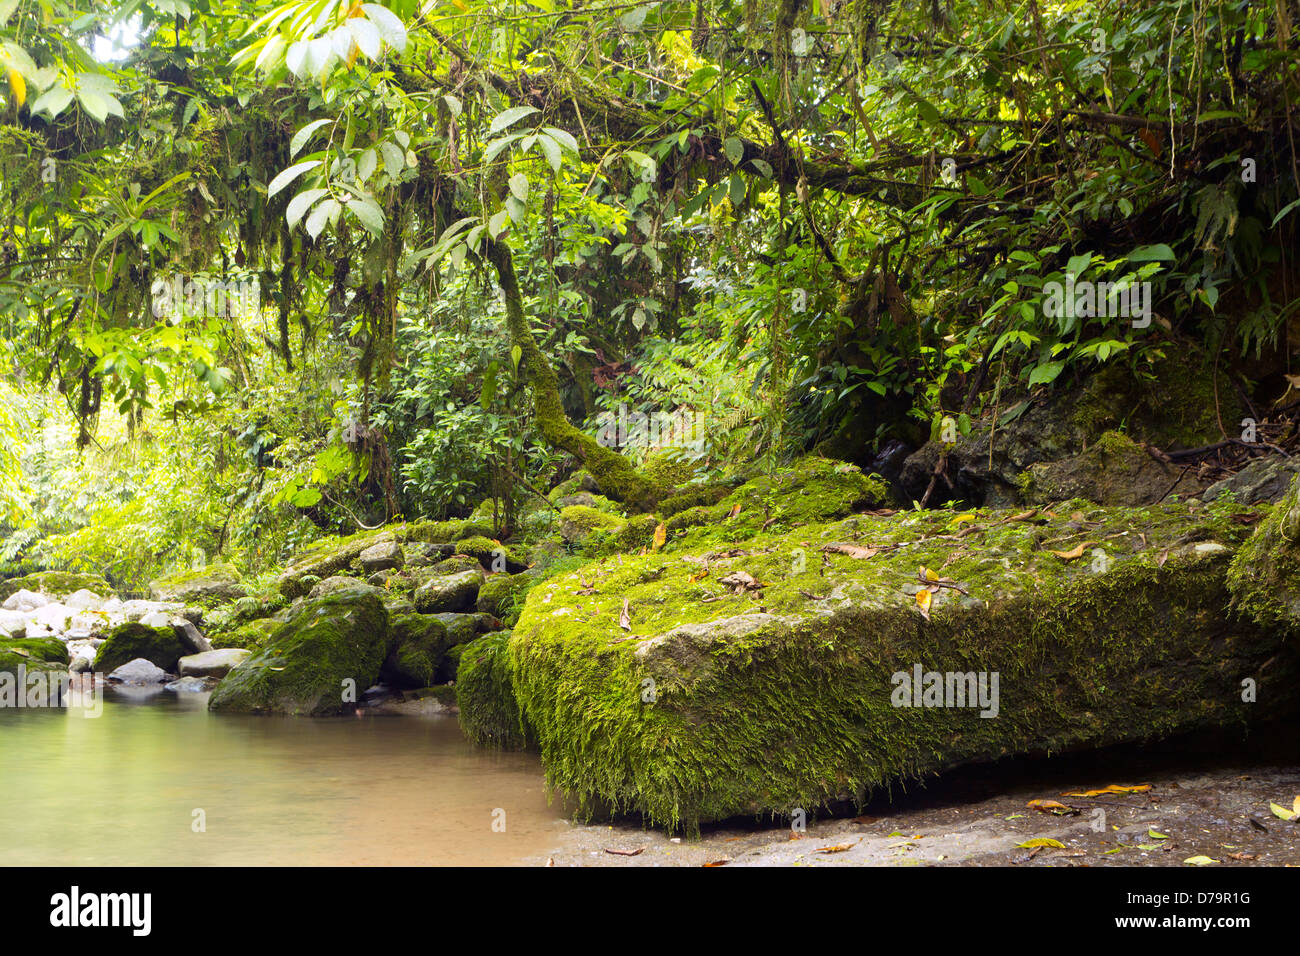 Blocs de calcaire une partie de la formation à côté d'une forêt Hollin river en Amazonie équatorienne Banque D'Images